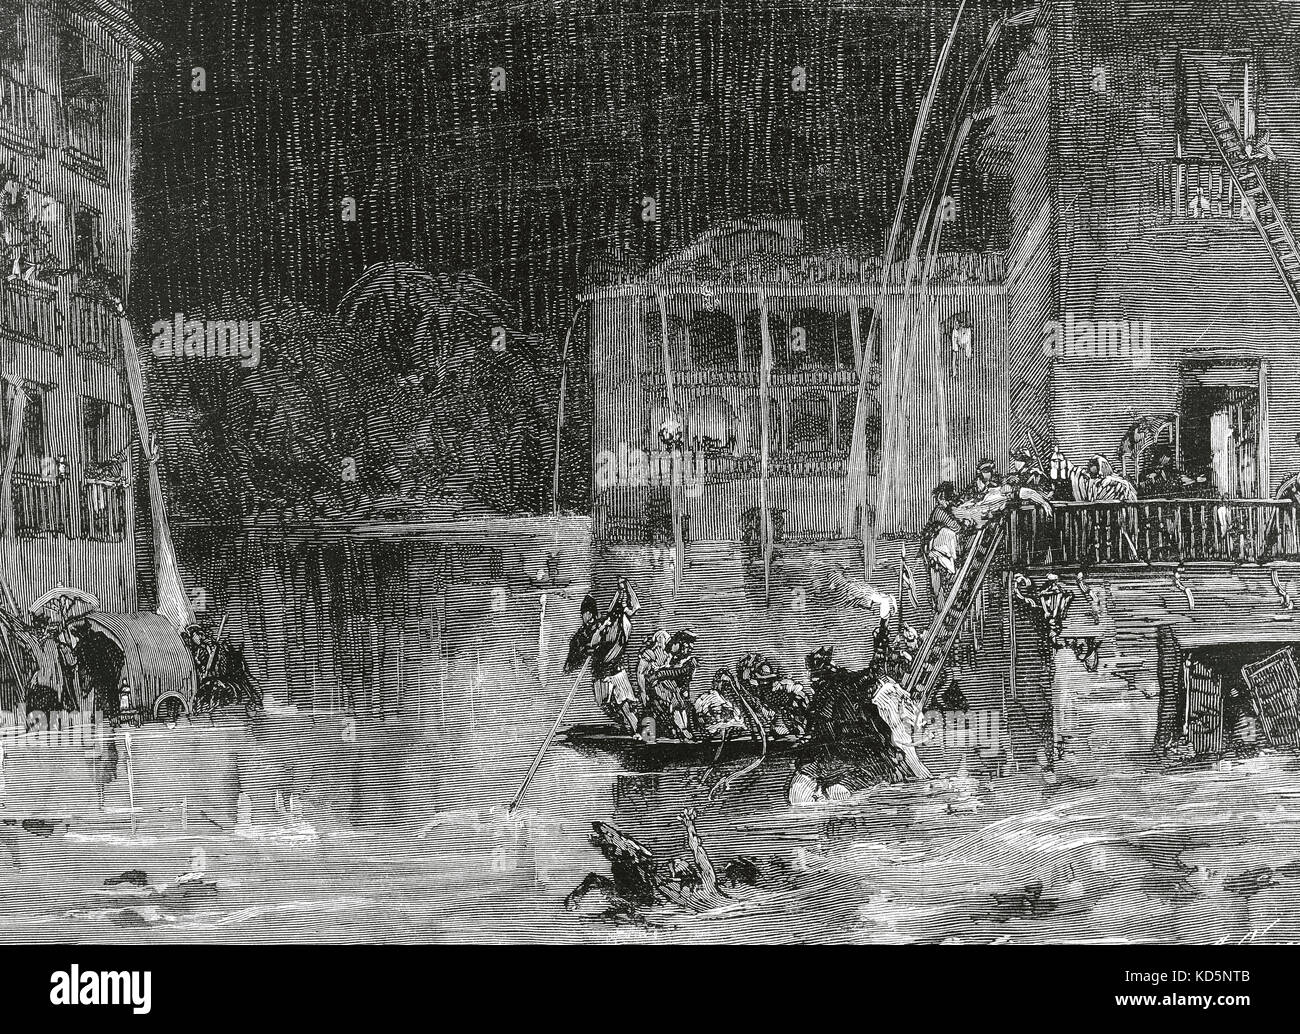 Spanien. Murcia. Die Überschwemmung von Santa Teresa (15. Oktober 1879). Überschwemmung auf dem Platz der Marques de Camacho. Gravur von Carretero. "La Ilustración Española y Americana", 1879. Stockfoto